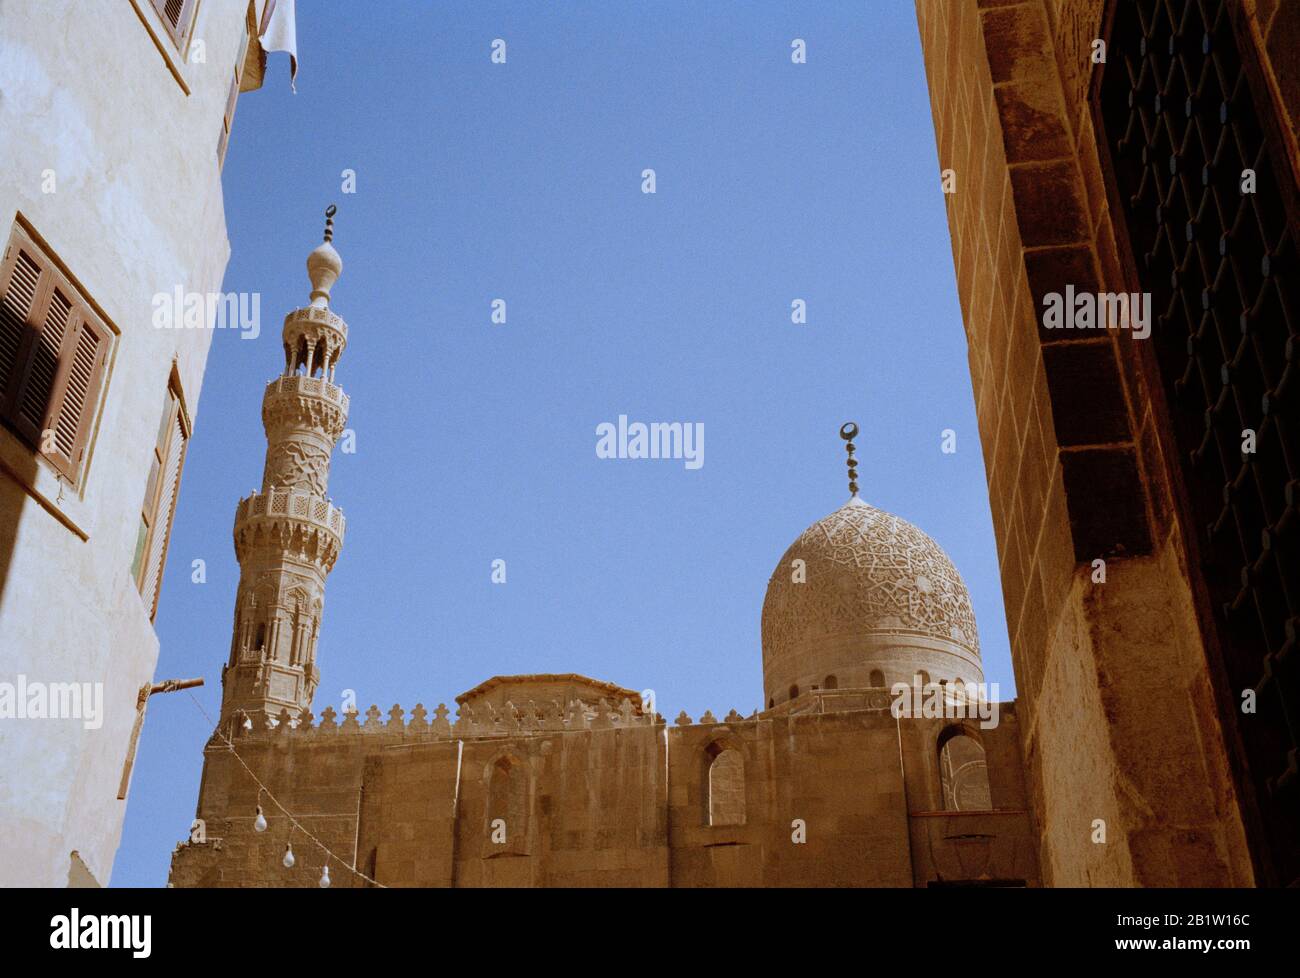 Fotografia di viaggio - Moschea e complesso di Funery del Sultan al-Ashraf Qaytbay nella città dei morti al Cairo in Egitto in Africa del Nord. Wanderlust Foto Stock